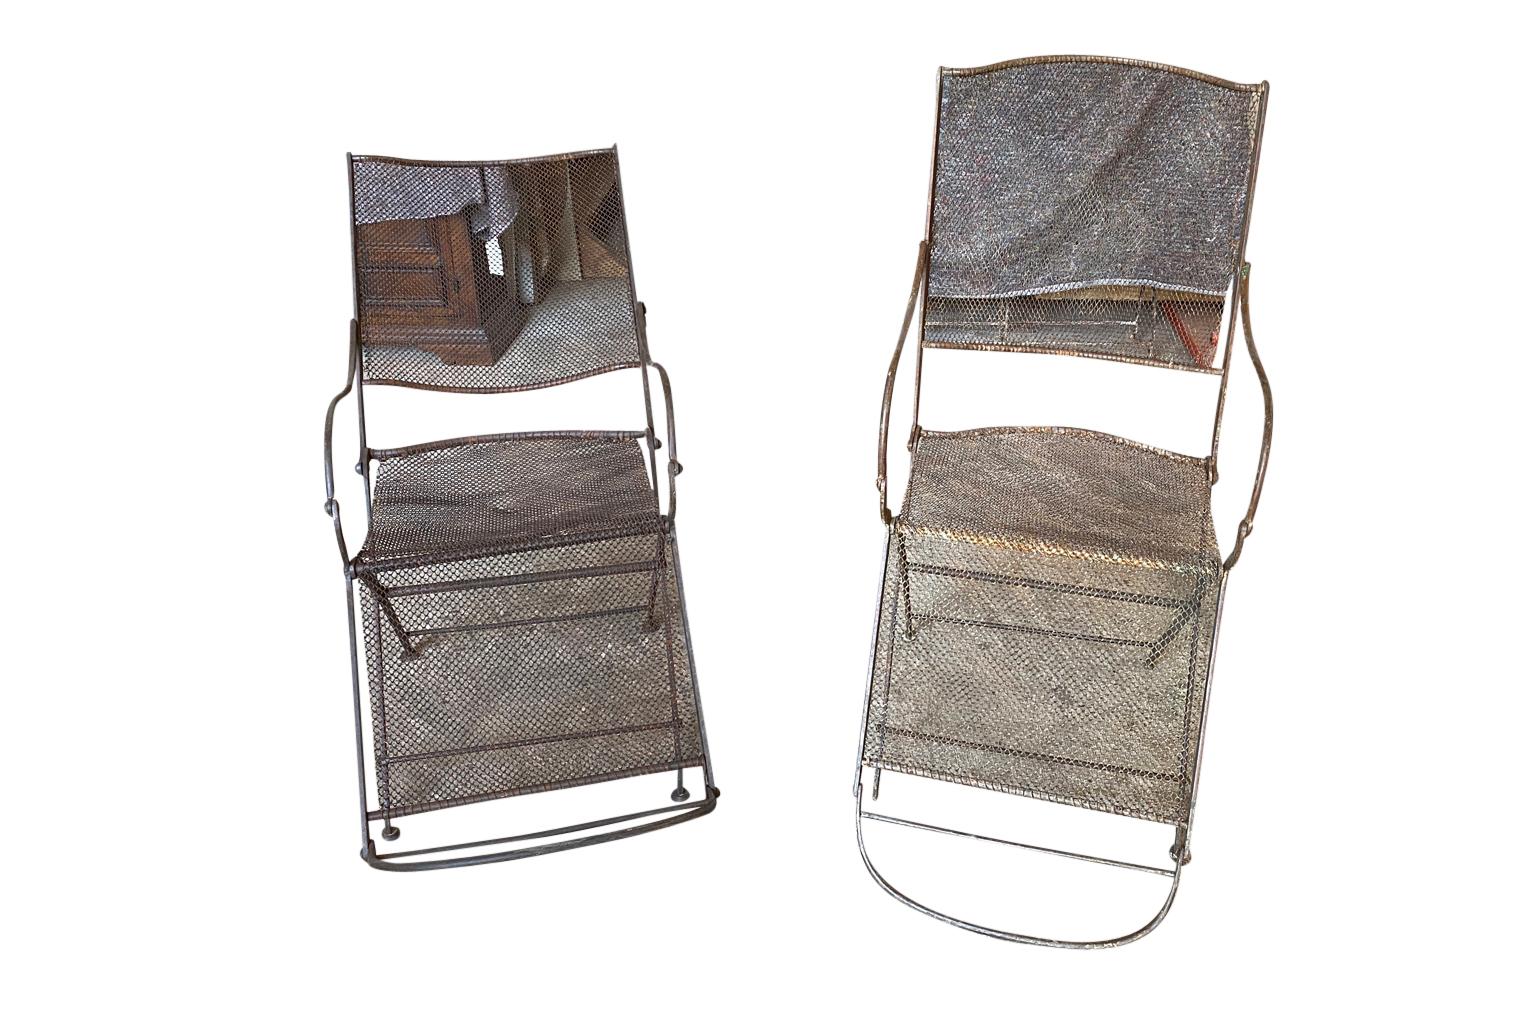 Une paire sensationnelle de chaises à bras de jardin anglaises du 19ème siècle. Construction solide en fer avec dossiers et sièges en maille de fer. Les fauteuils s'inclinent confortablement. Un produit idéal pour le jardin ou l'intérieur.